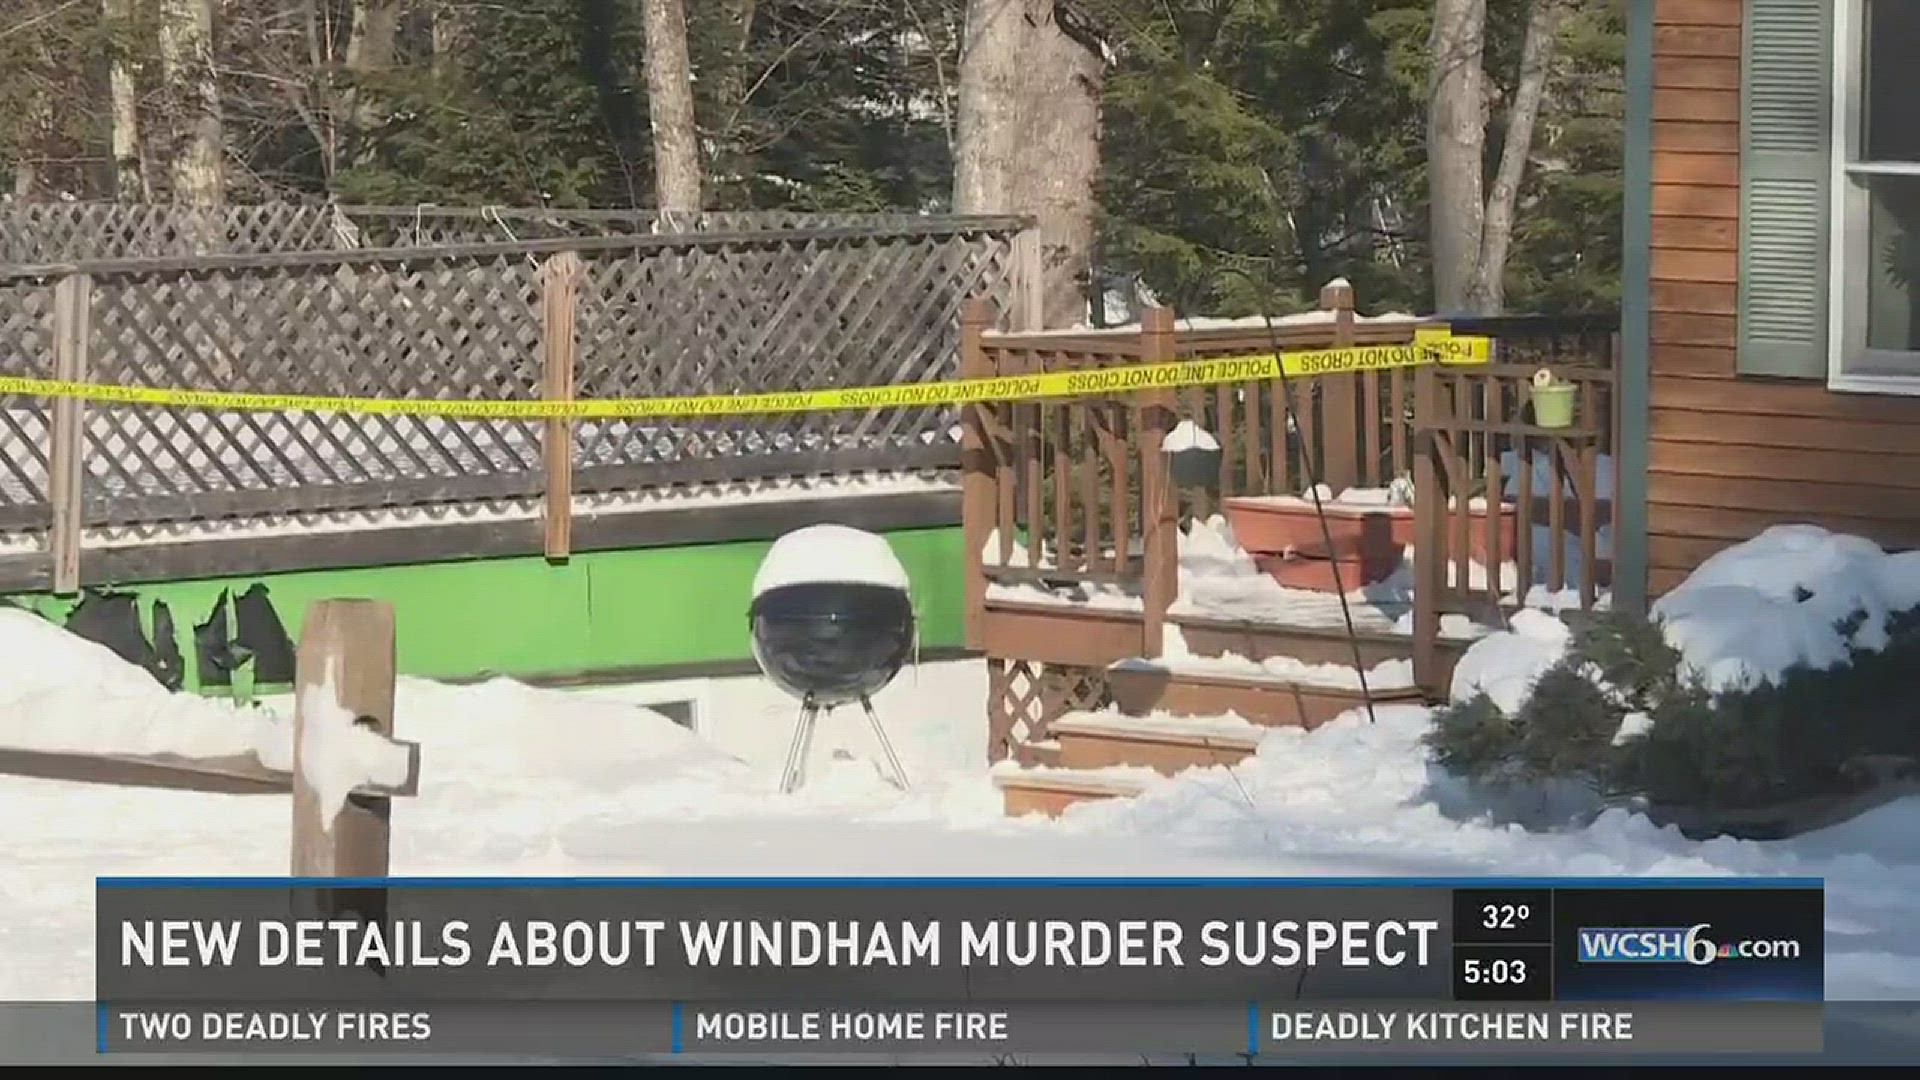 New details regarding Windham murder suspect.